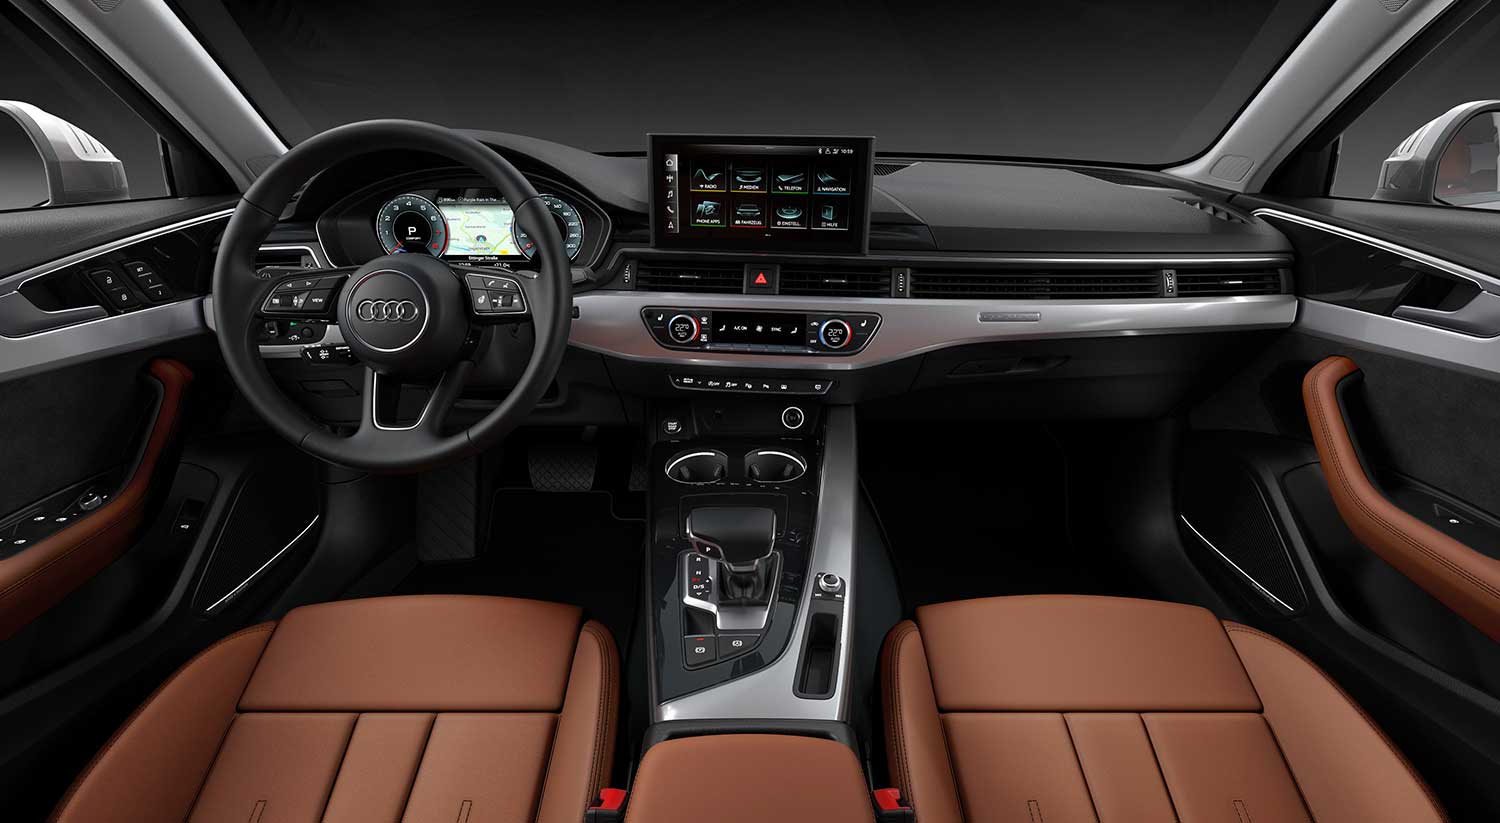 Enajenar campeón Dictadura Audi A4 2020: características y lanzamiento - Carnovo